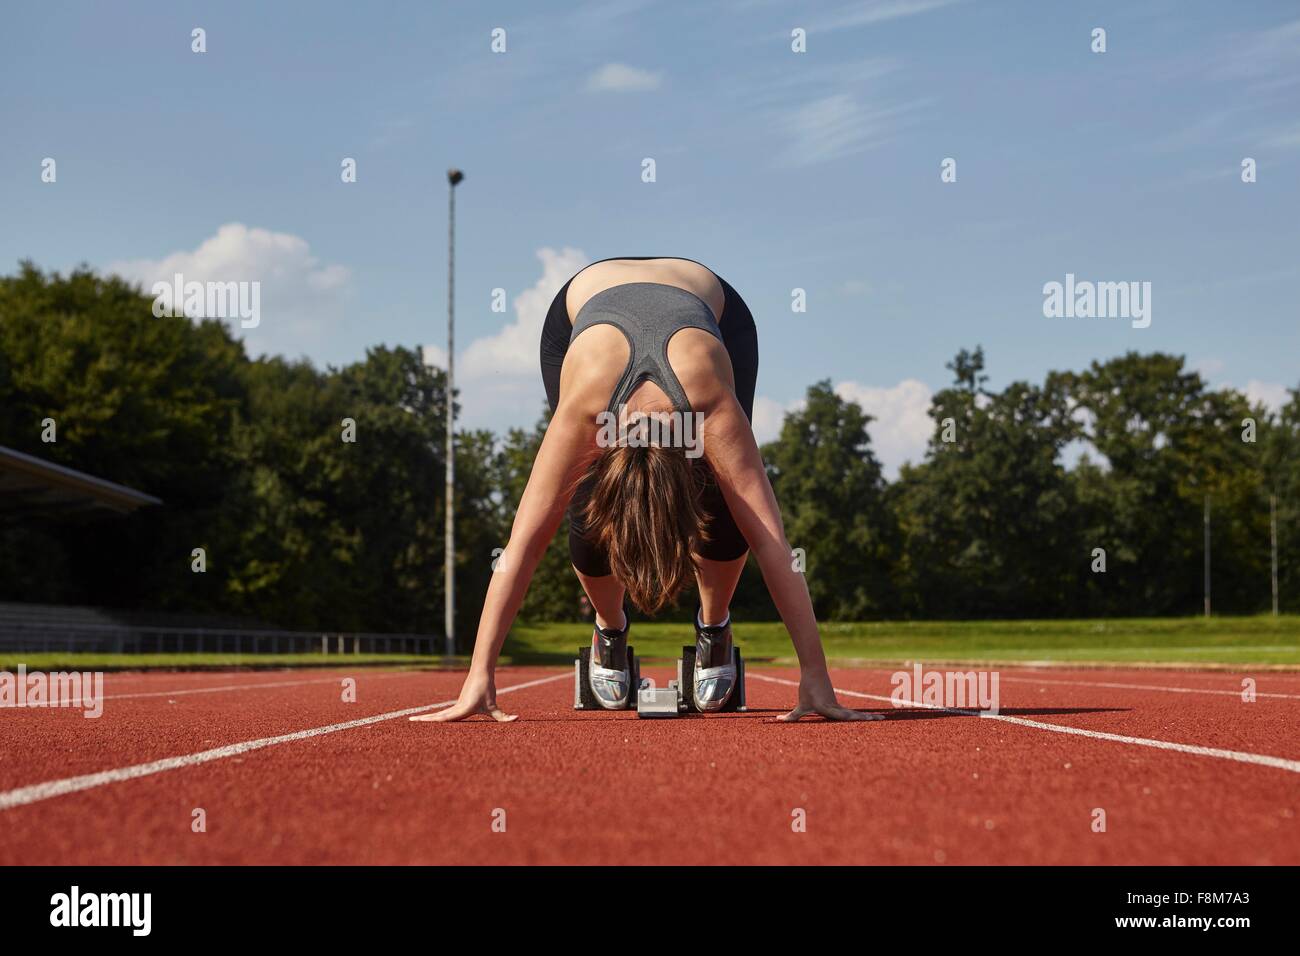 Young female runner bending forward on race track starting line Stock Photo